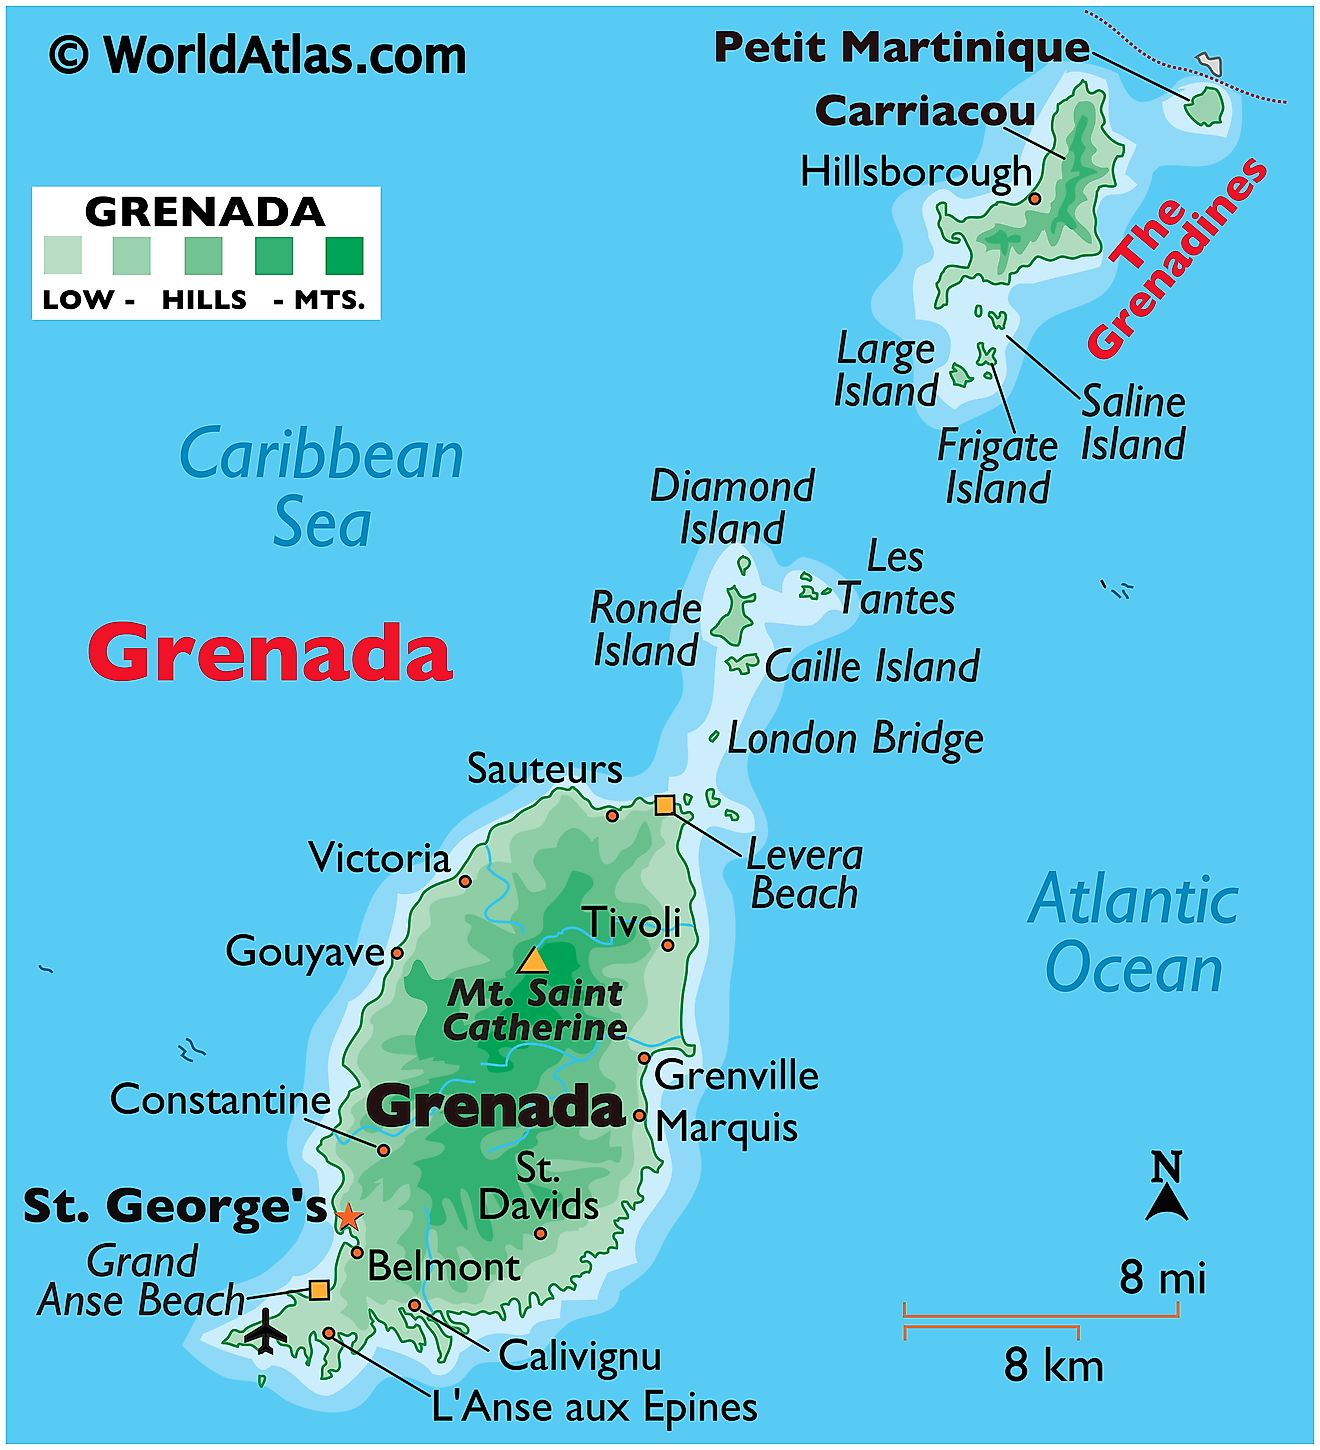 Mapa físico de Granada que muestra las islas principales, el terreno, el punto más alto, los asentamientos importantes, las playas, etc.